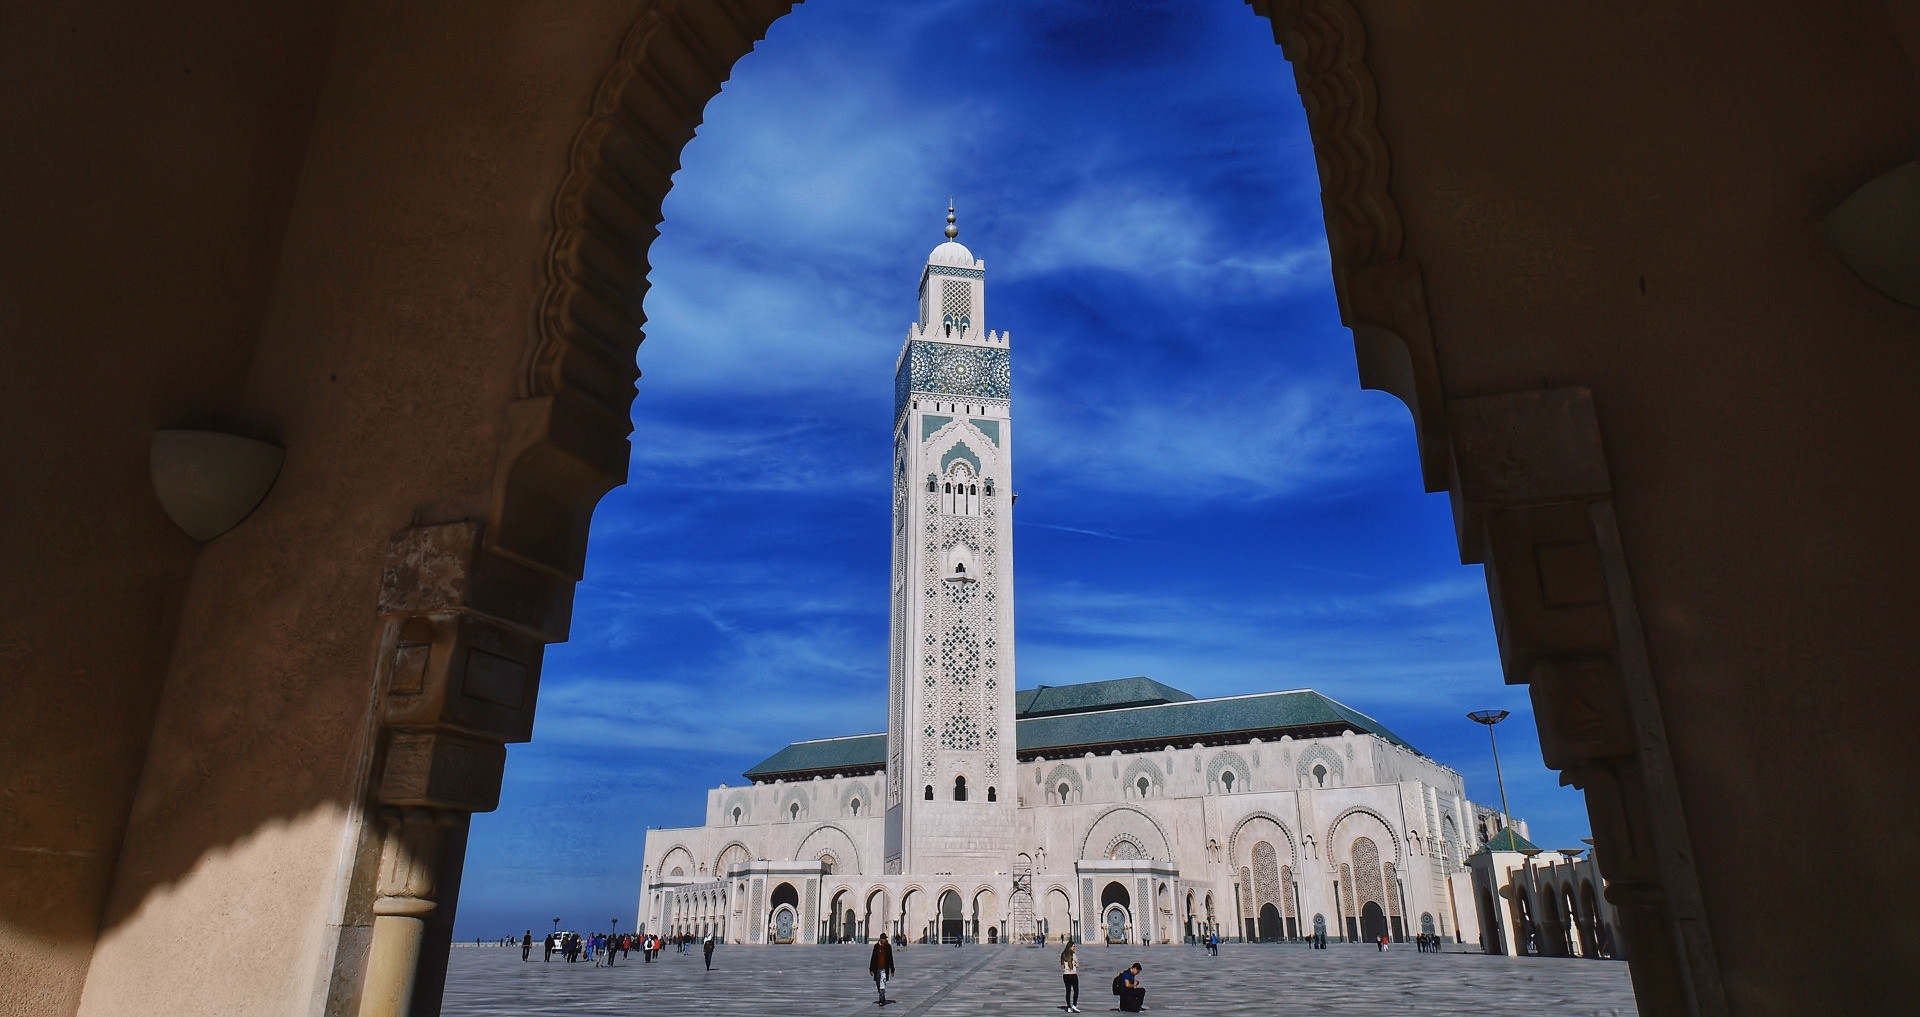 View - Nhà thờ Hồi giáo xây từ đá và gỗ tuyết tùng, đẹp lộng lẫy bên bờ Đại Tây Dương